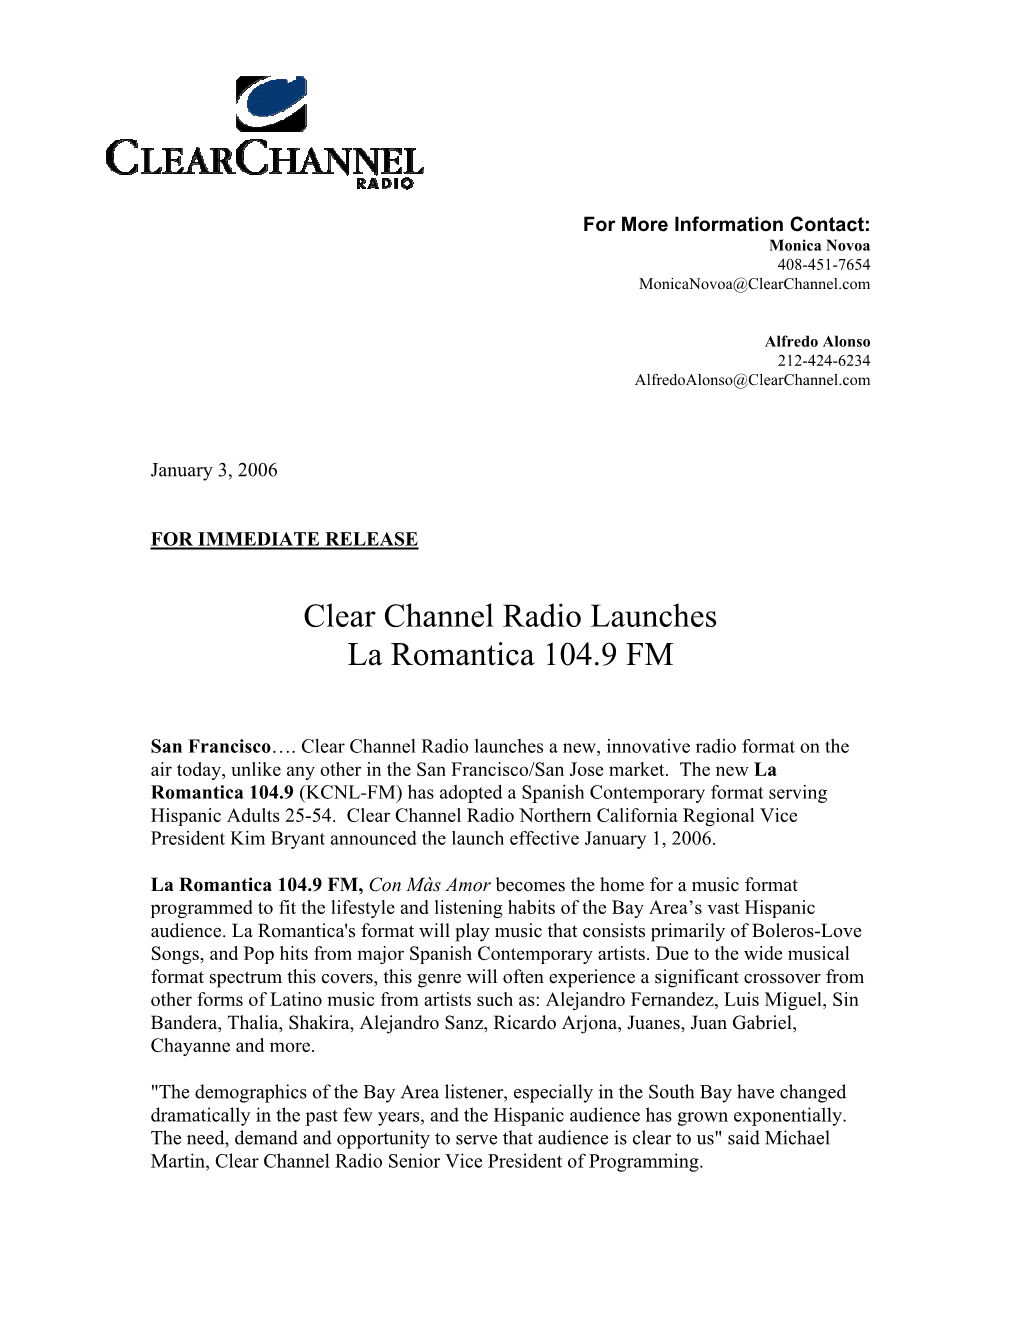 Clear Channel Radio Launches La Romantica 104.9 FM